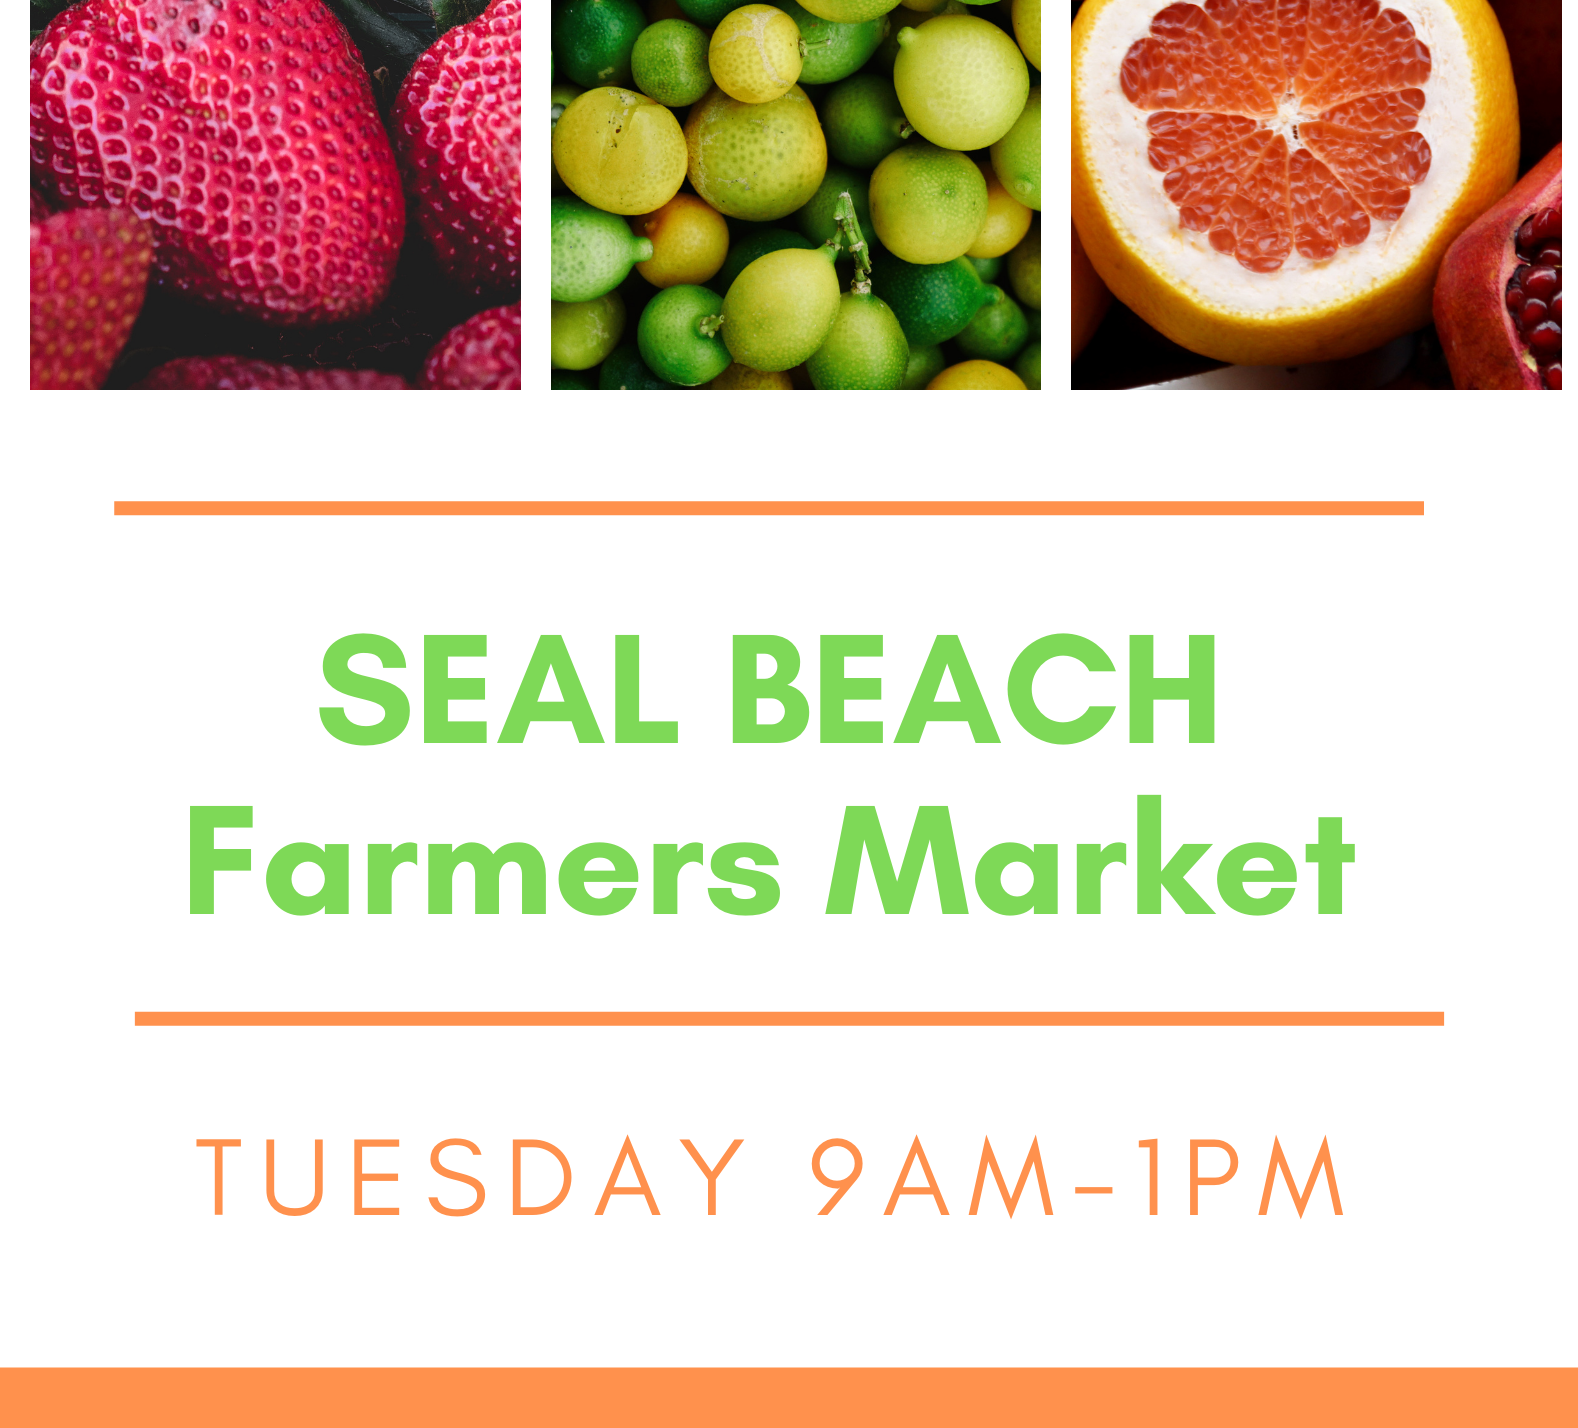 Seal Beach Farmers Market